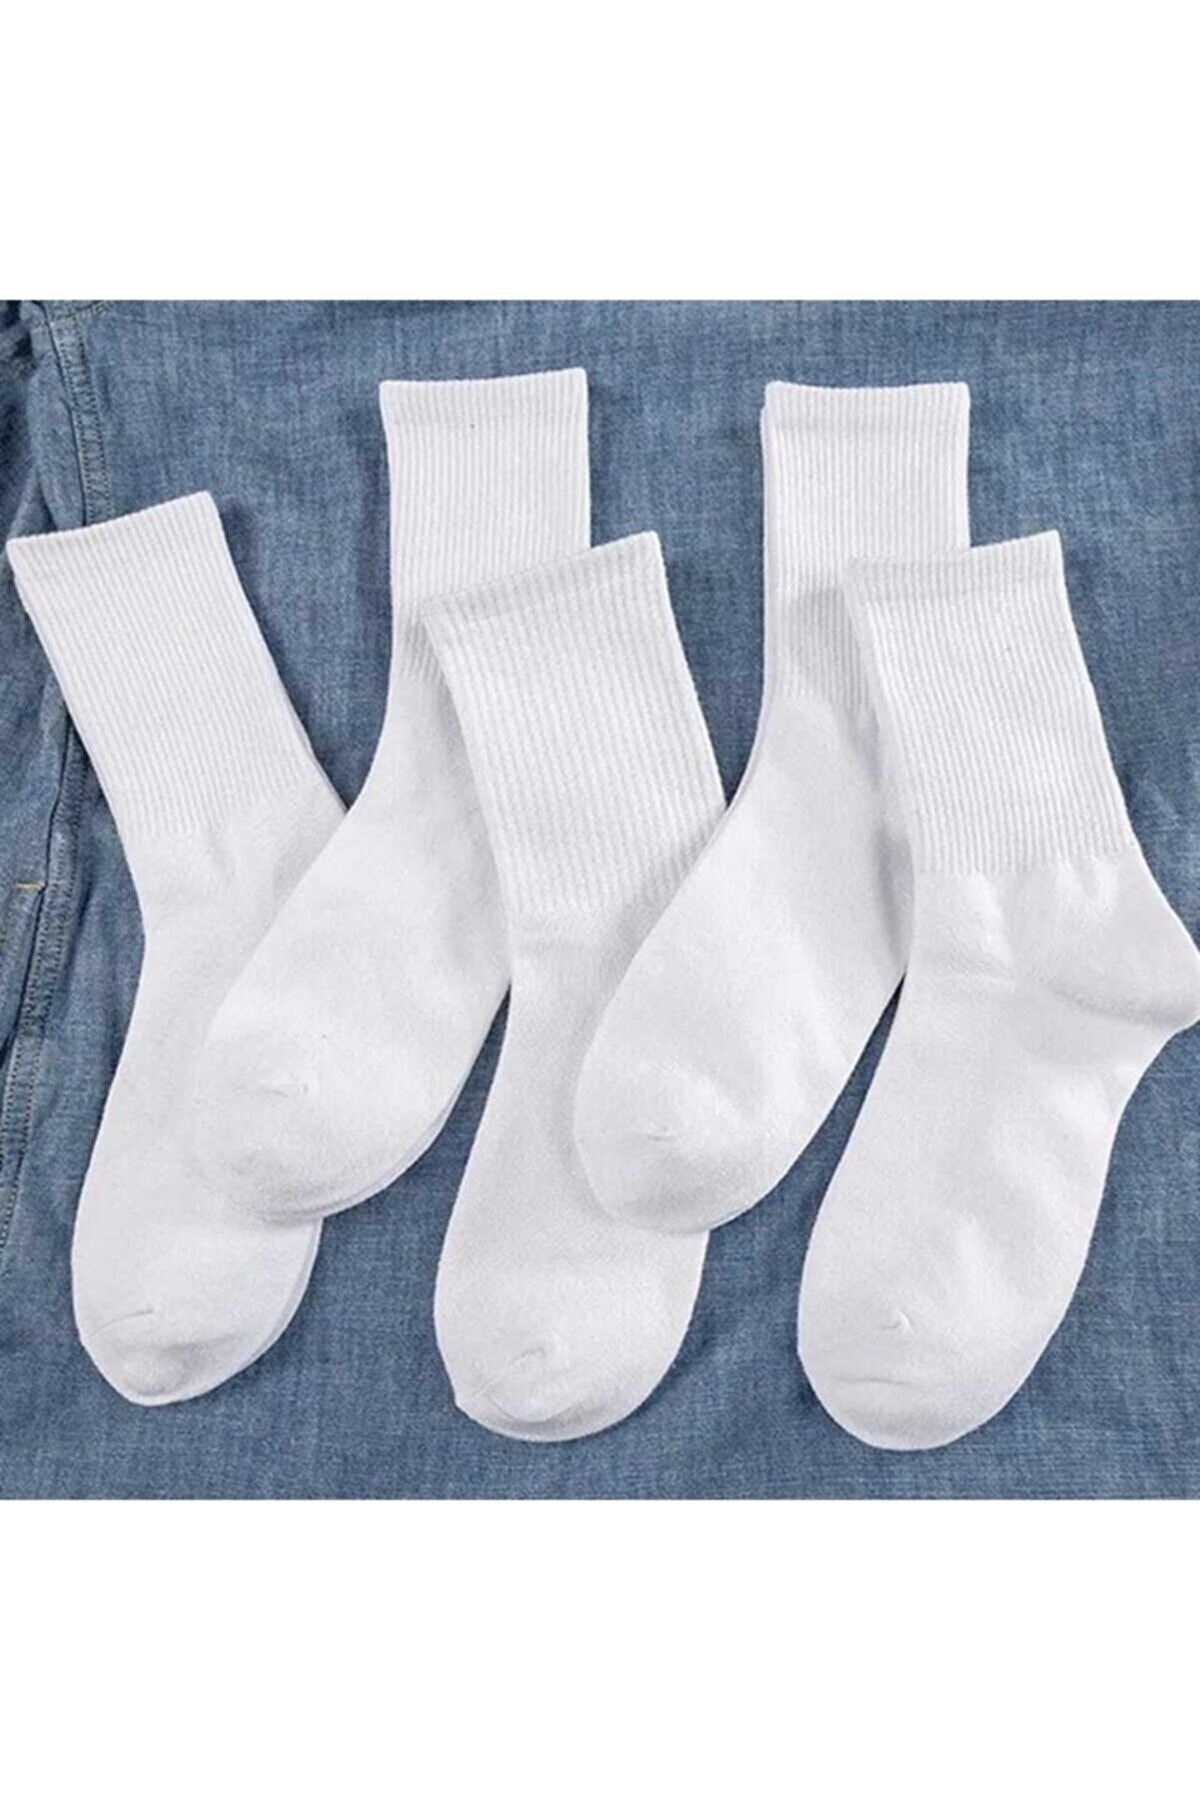 Önder 3 Çift Unisex Düz Beyaz Spor Çorap Erkek Ve Kadın Için Sporcu Çorabı Kolej Çorap